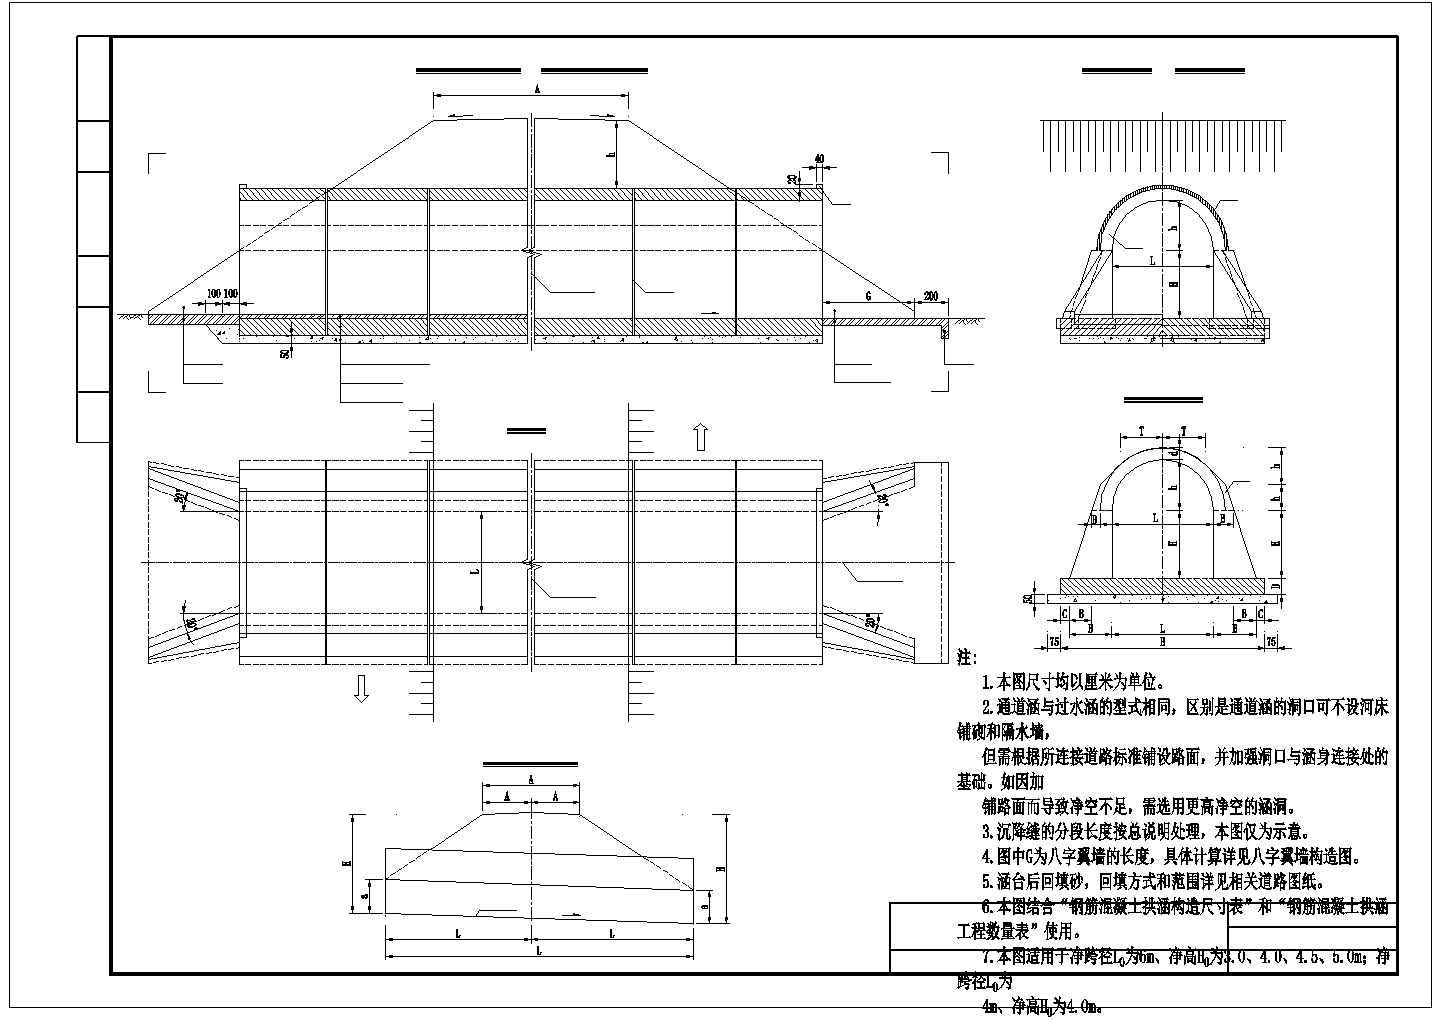 2014新版钢筋混凝土拱涵设计通用图